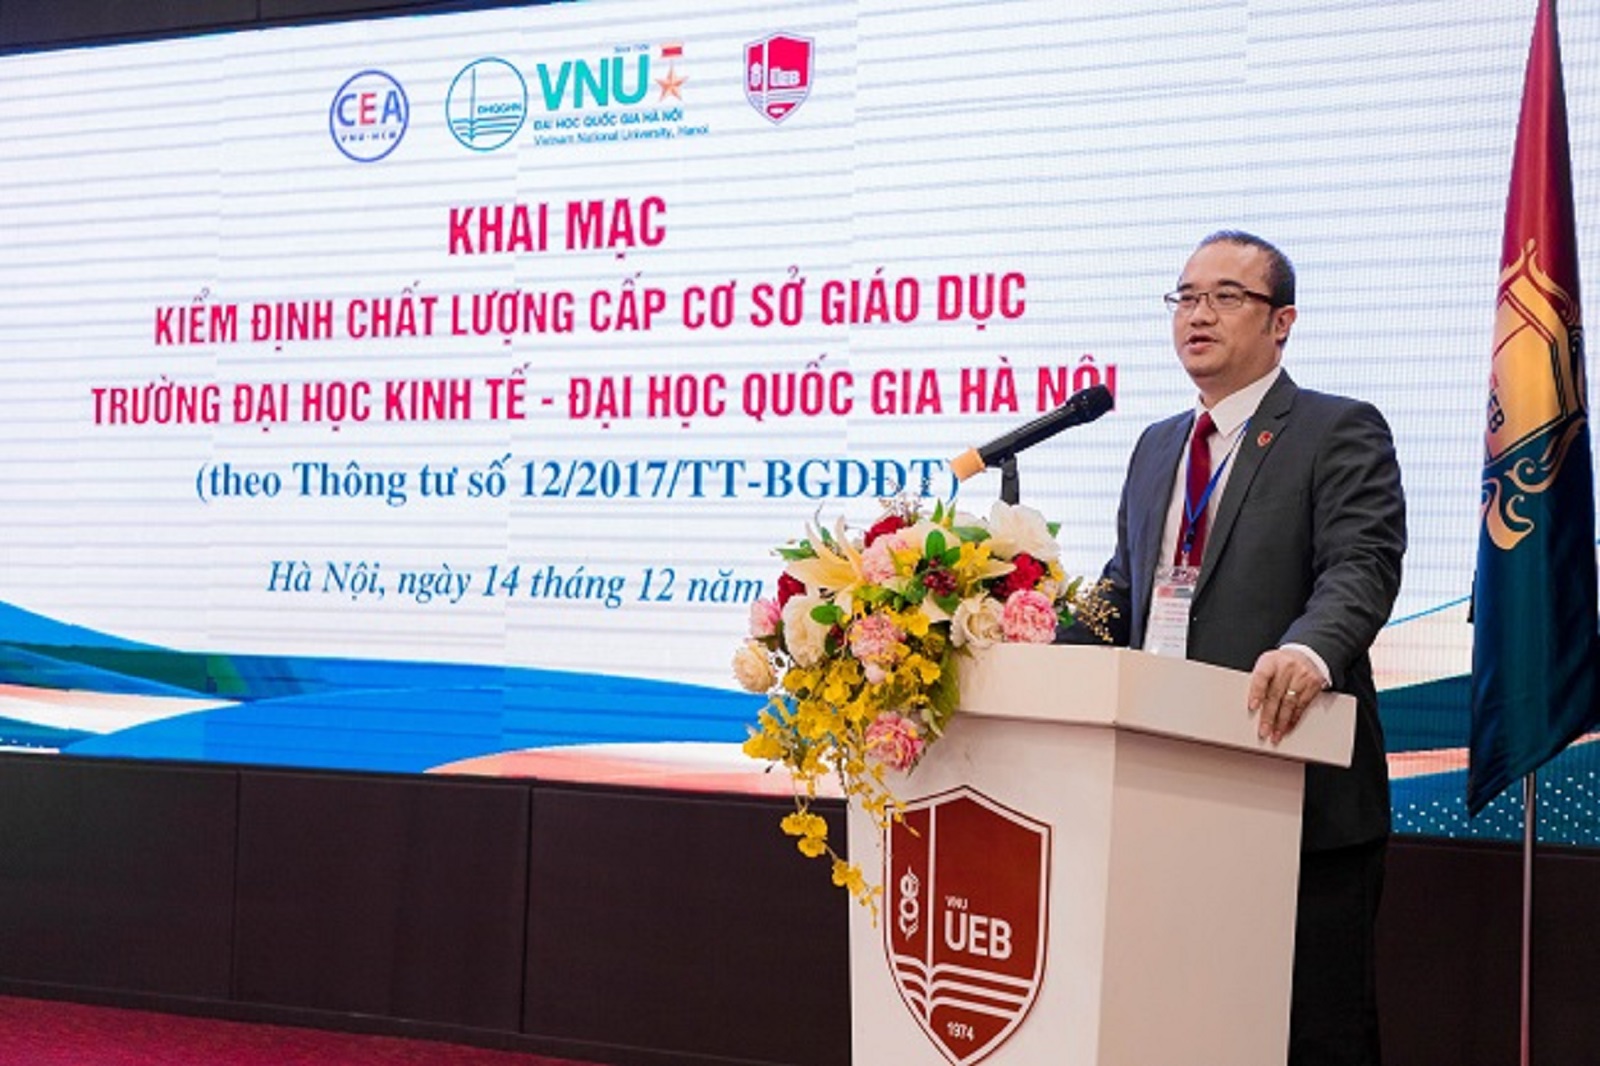 Khảo sát chính thức Kiểm định chất lượng Cơ sở giáo dục  tại Trường Đại học Kinh tế, Đại học Quốc gia Hà Nội